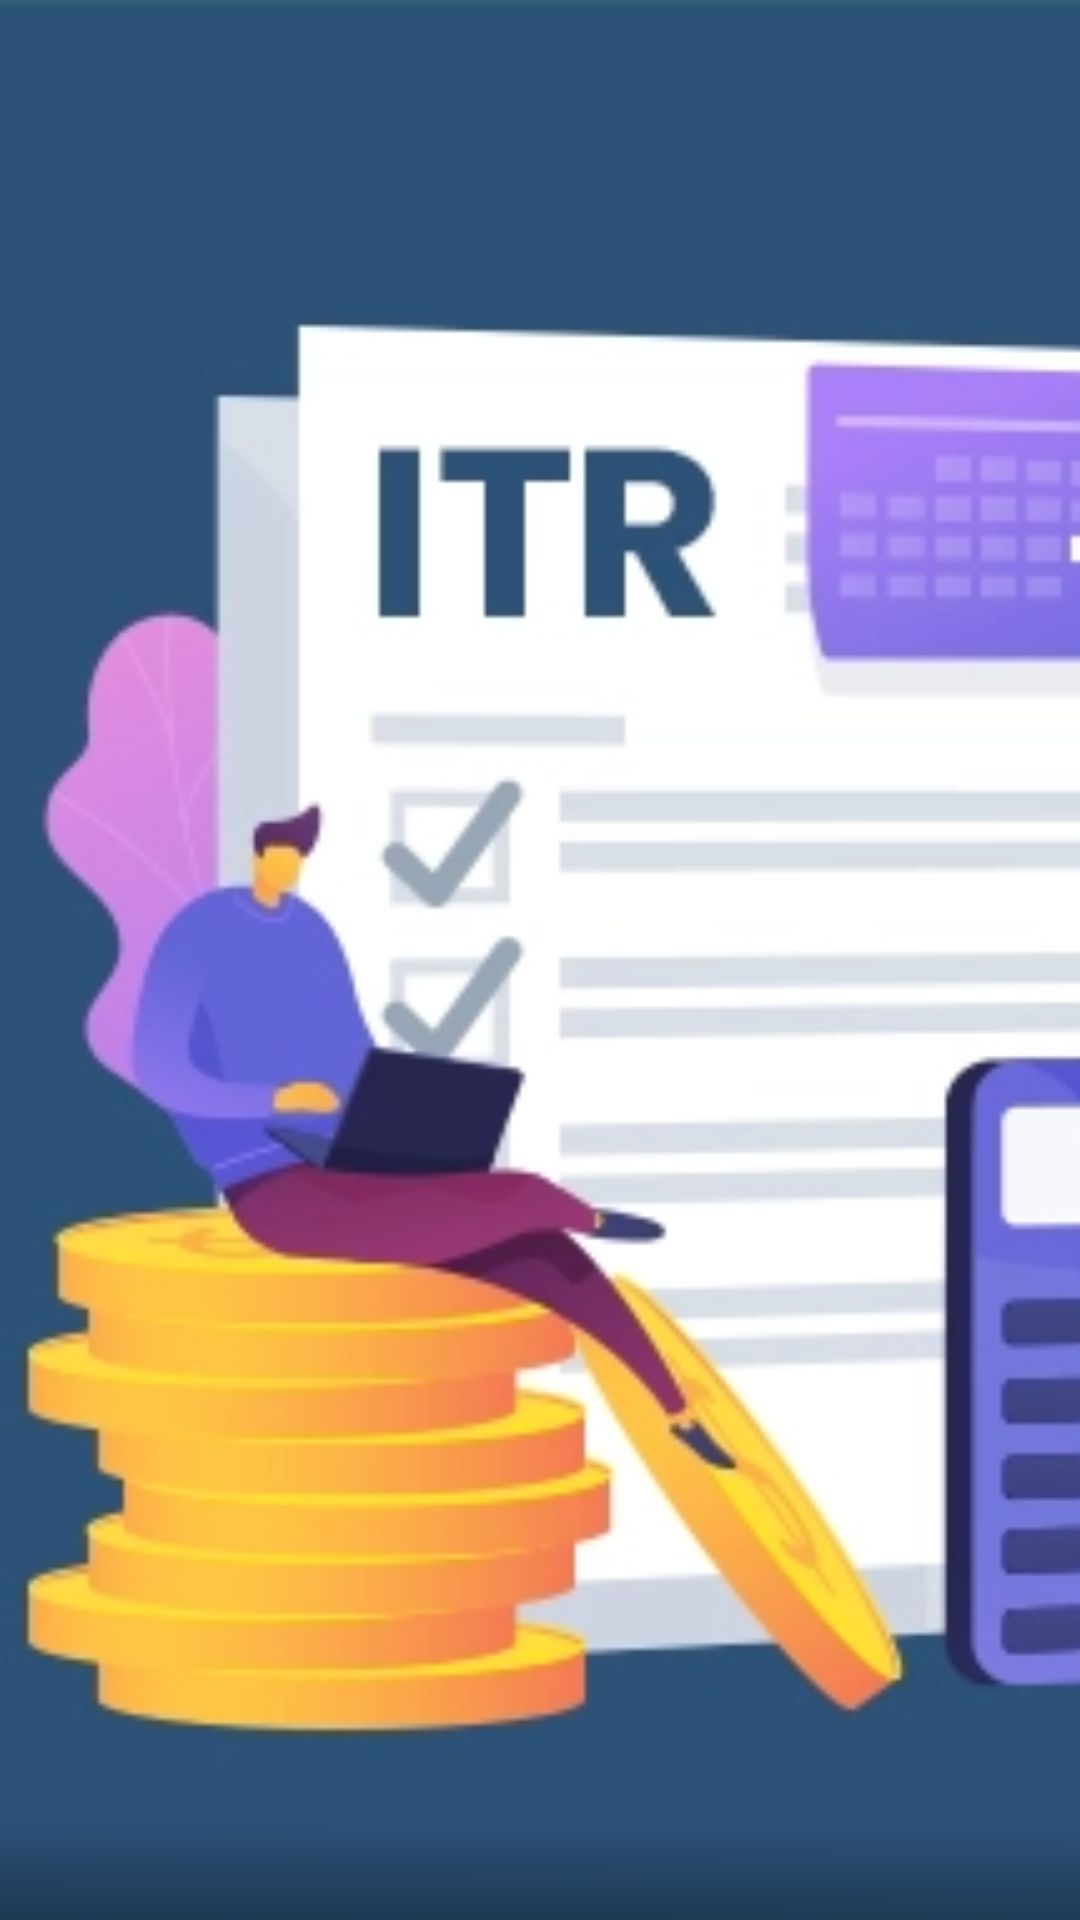 ITR Refund Status ऐसे कर सकते हैं चेक, जानें स्टेप बाय स्टेप प्रोसेस 